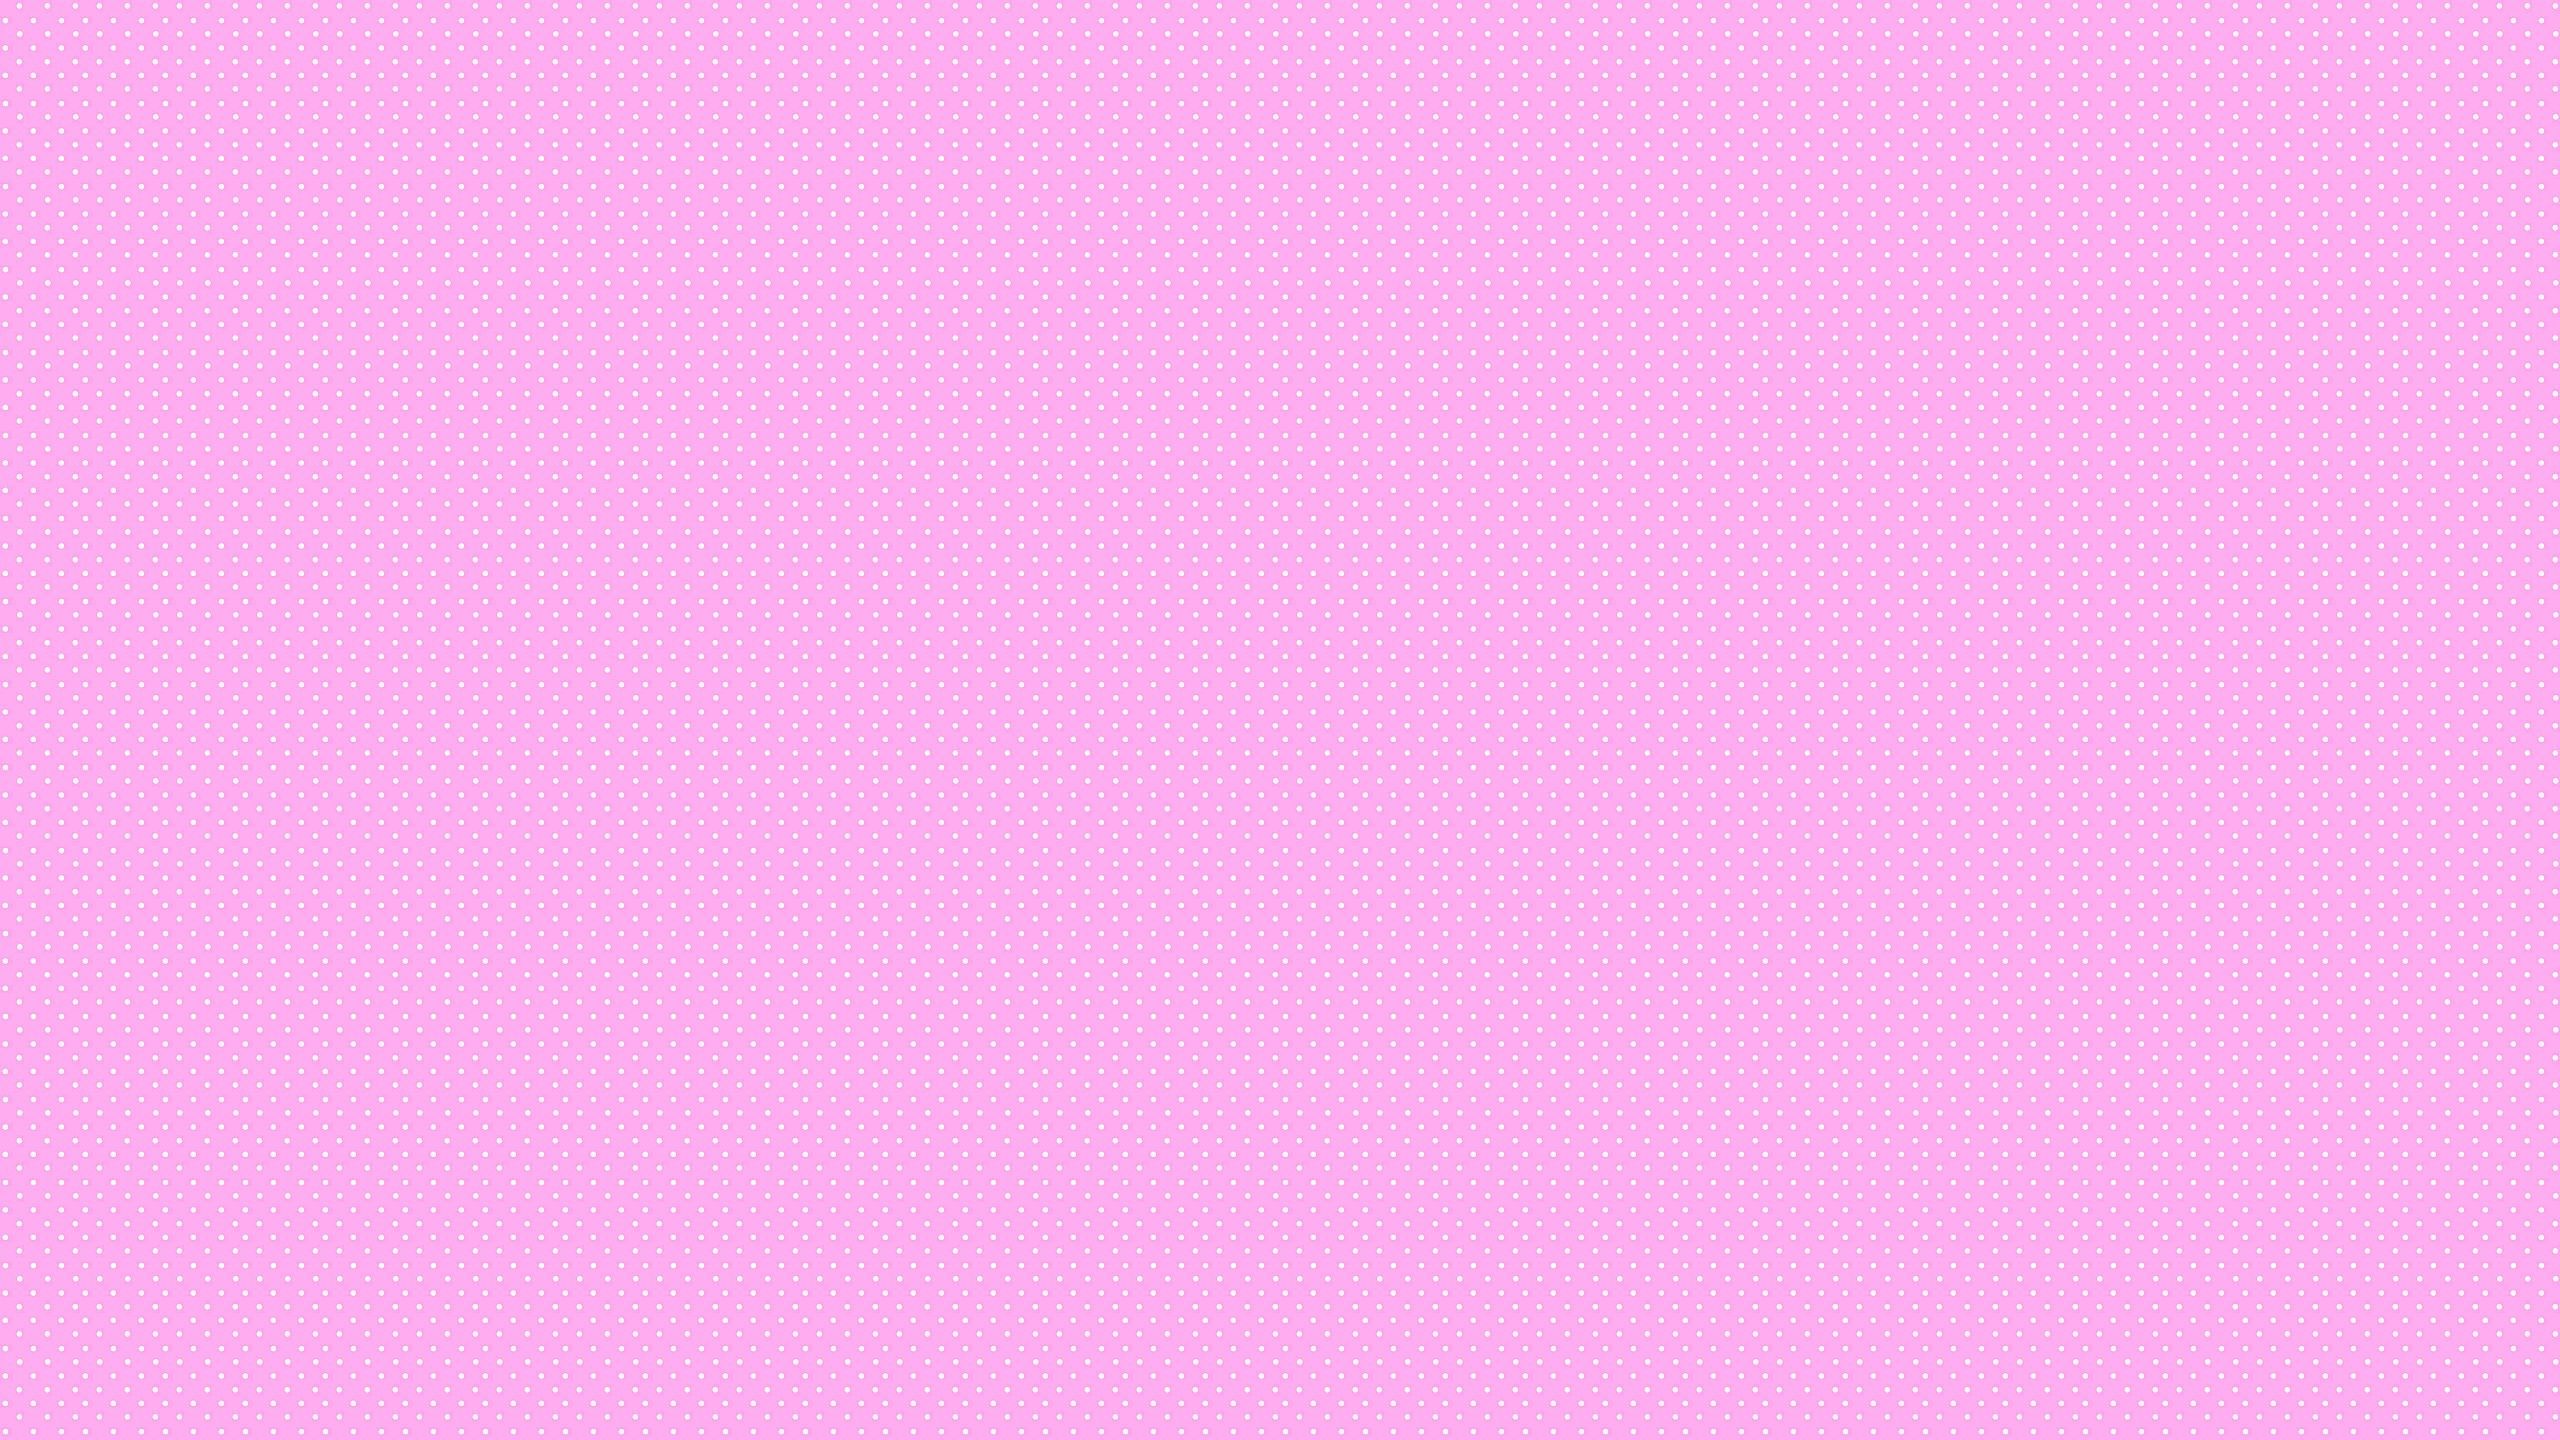 Bts Laptop Tumblr Pink Wallpaper